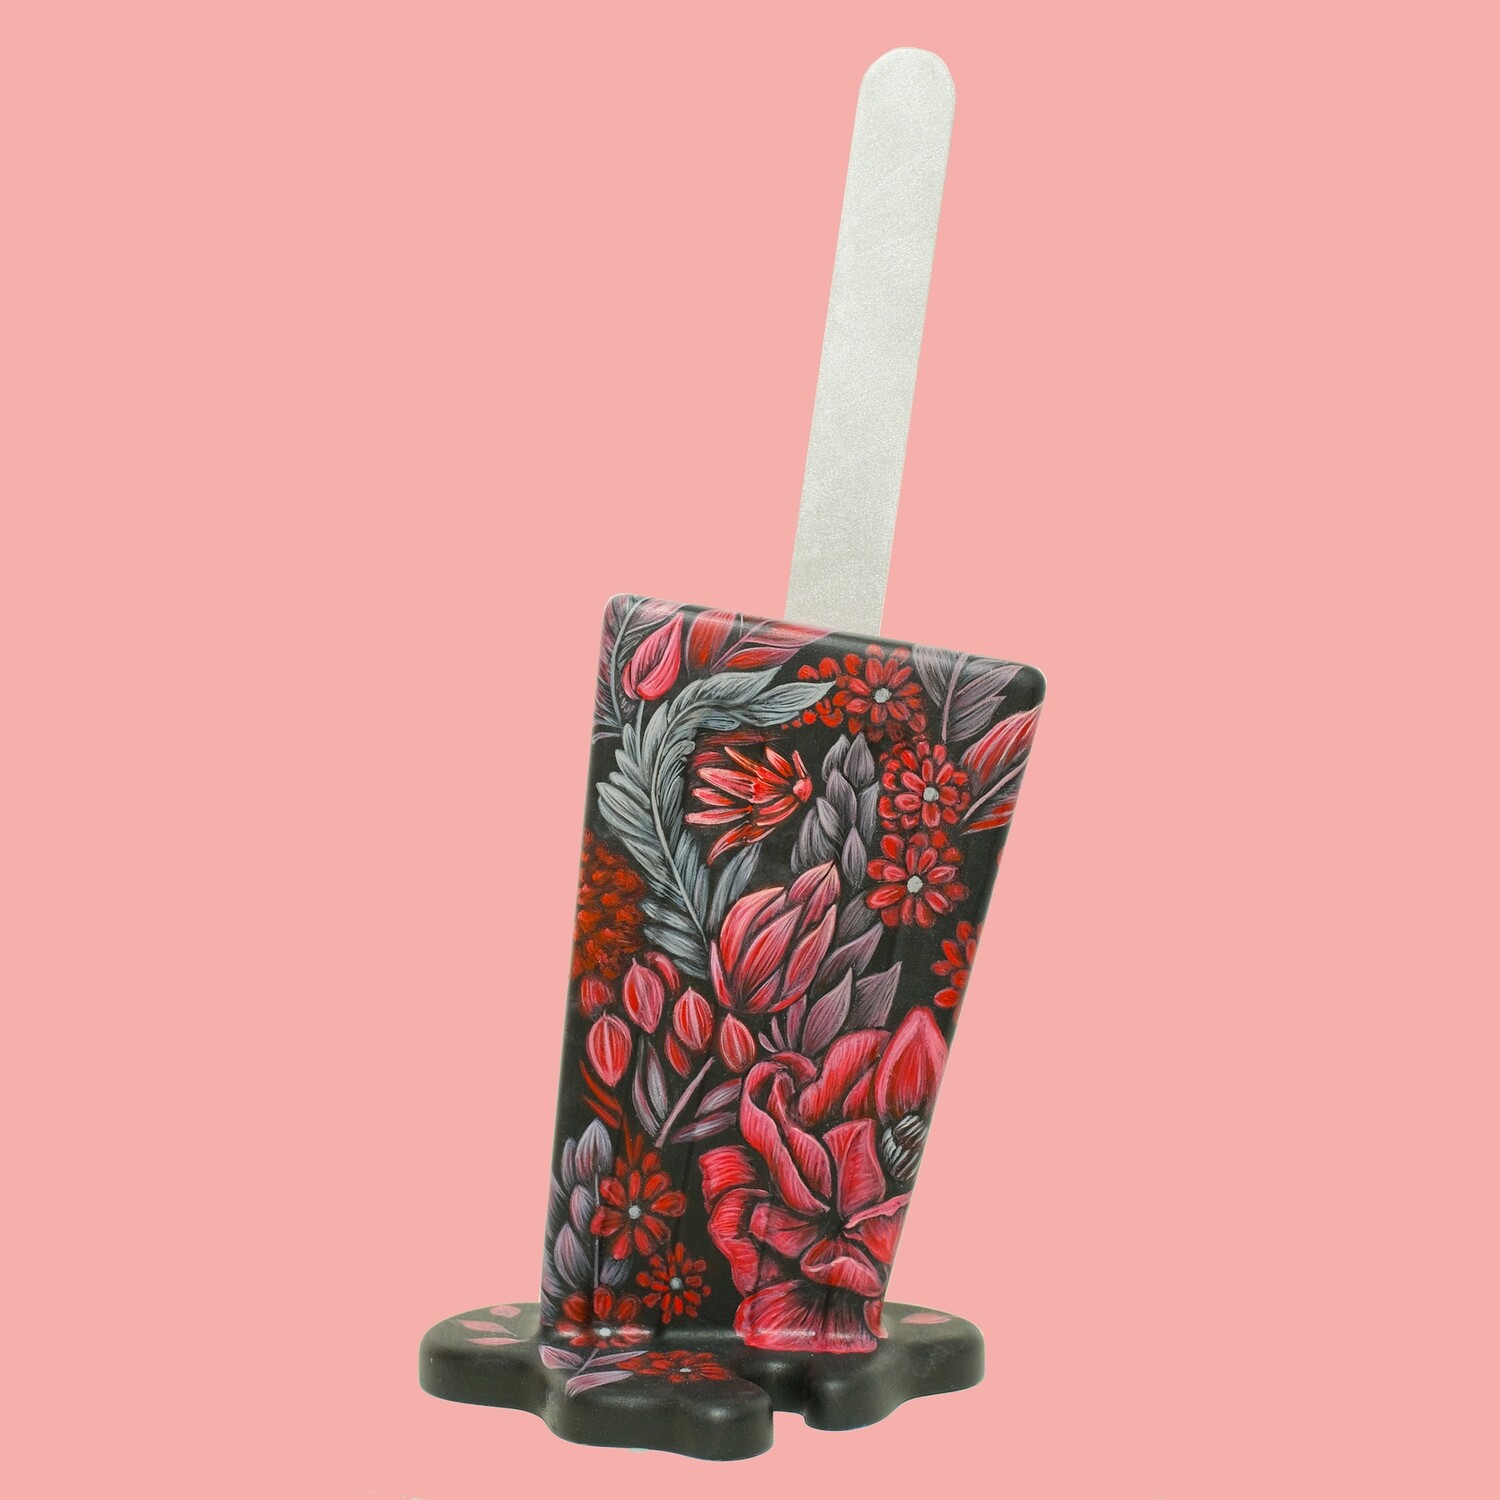 BRKLYN - Original Melting Pops - Melting Popsicle Resin Art